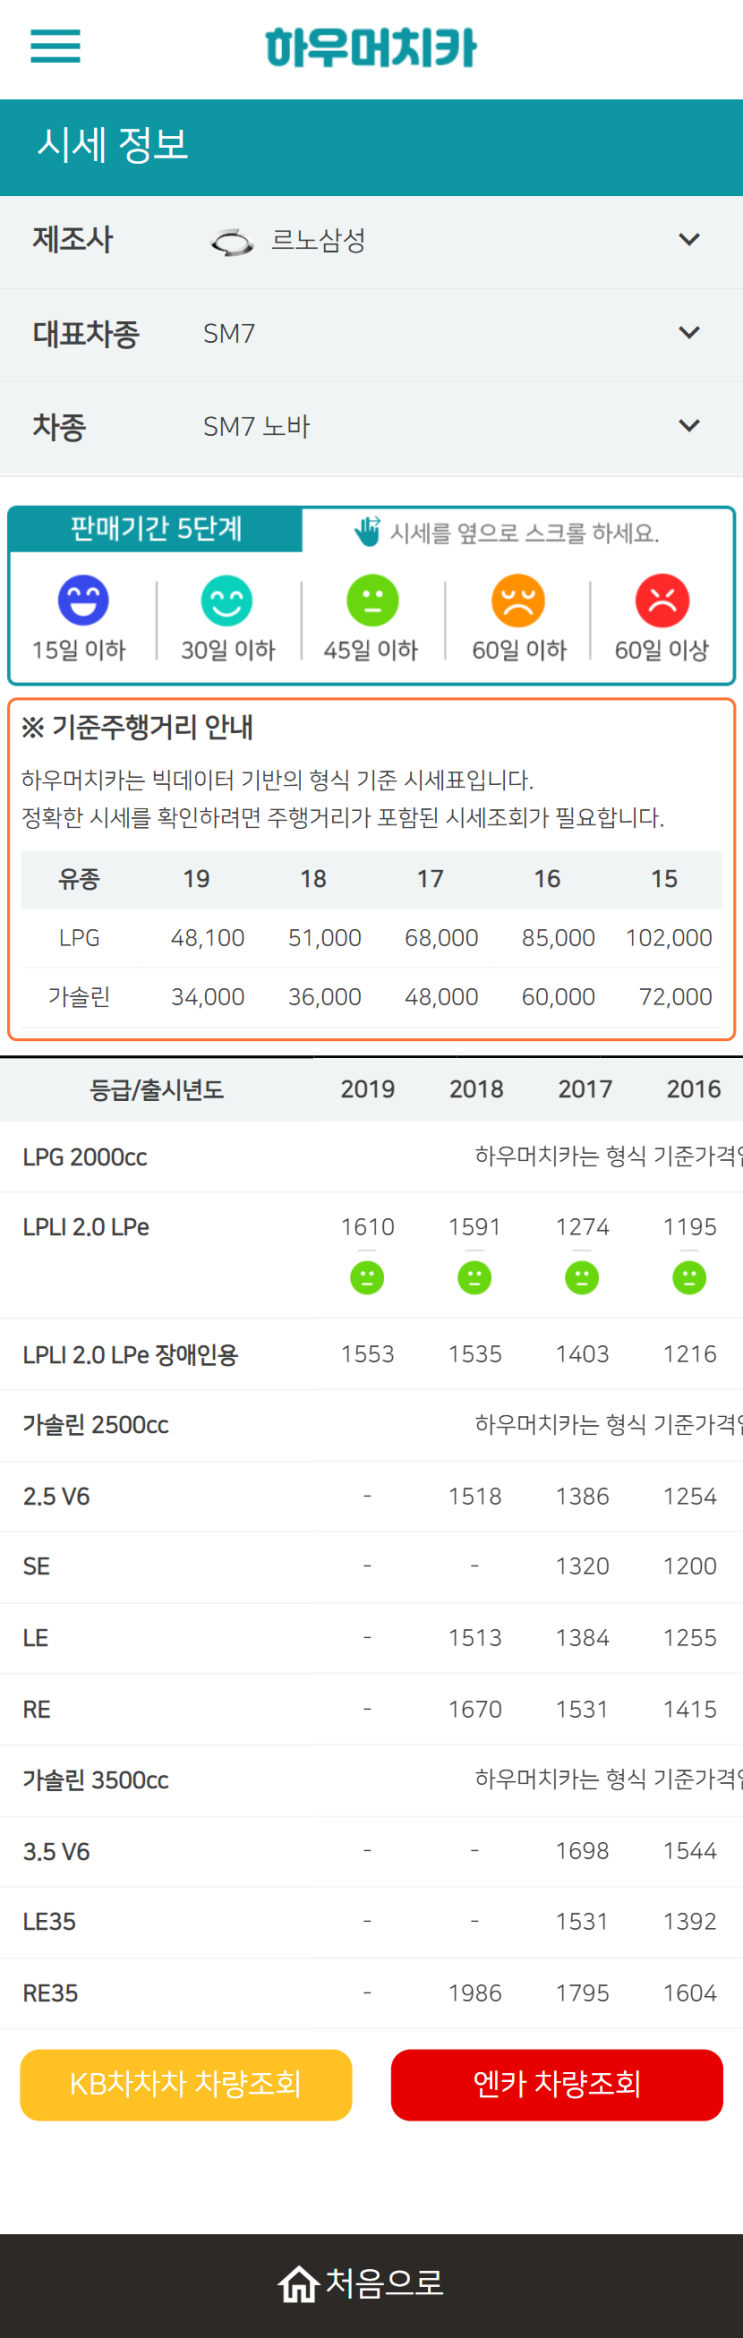 하우머치카 2021년 11월 SM7 노바 중고차가격.시세표